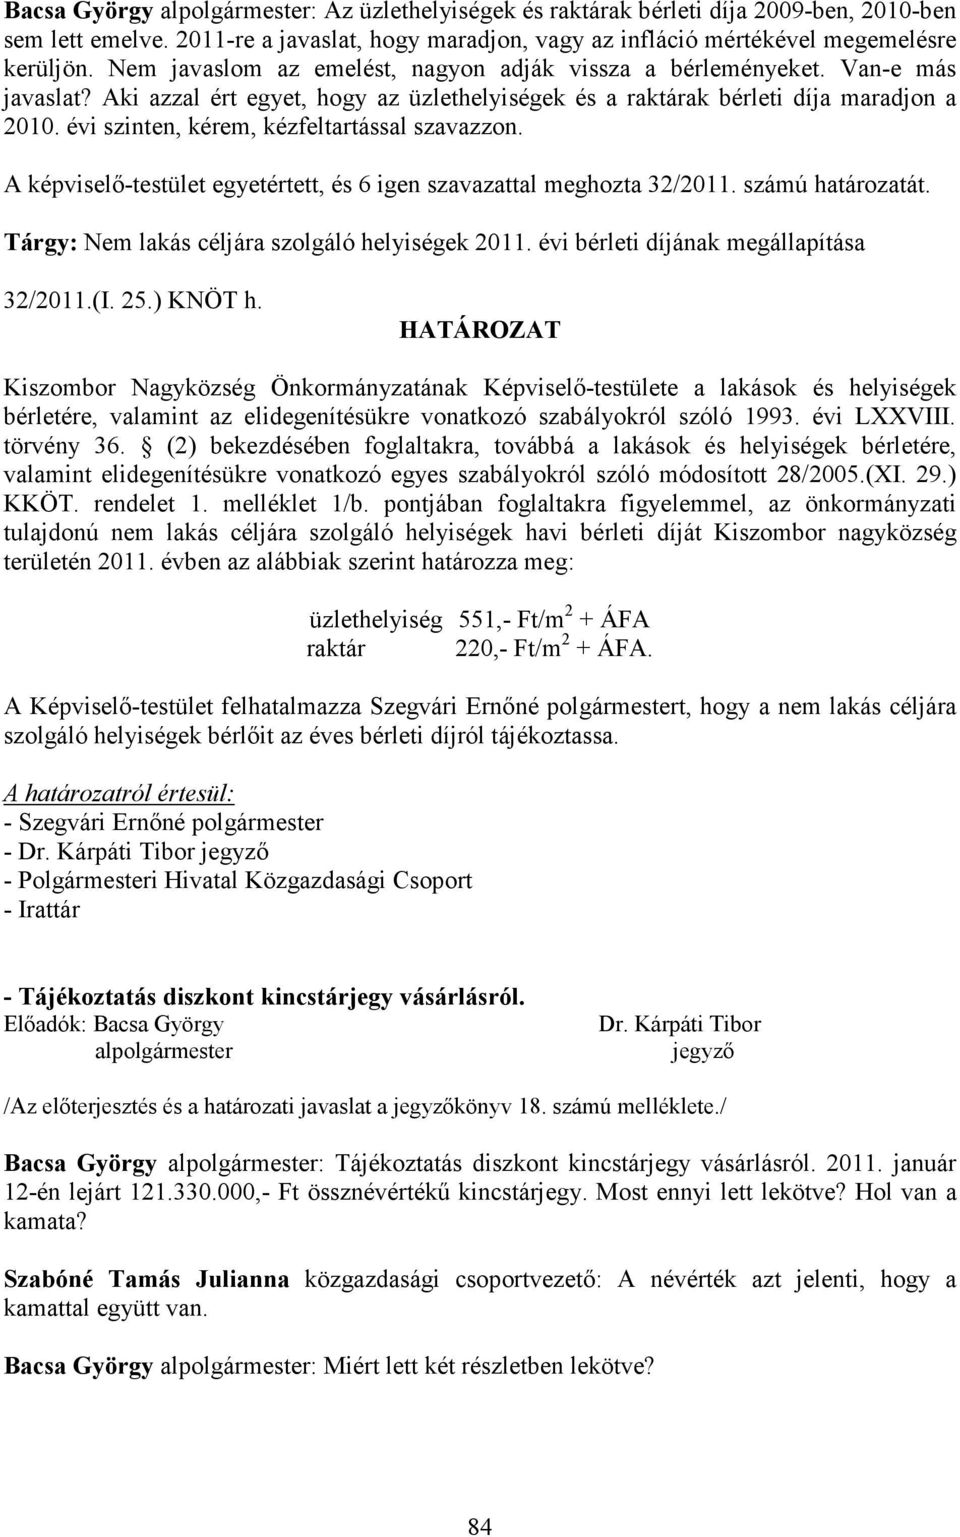 évi szinten, kérem, kézfeltartással szavazzon. A képviselı-testület egyetértett, és 6 igen szavazattal meghozta 32/2011. számú határozatát. Tárgy: Nem lakás céljára szolgáló helyiségek 2011.